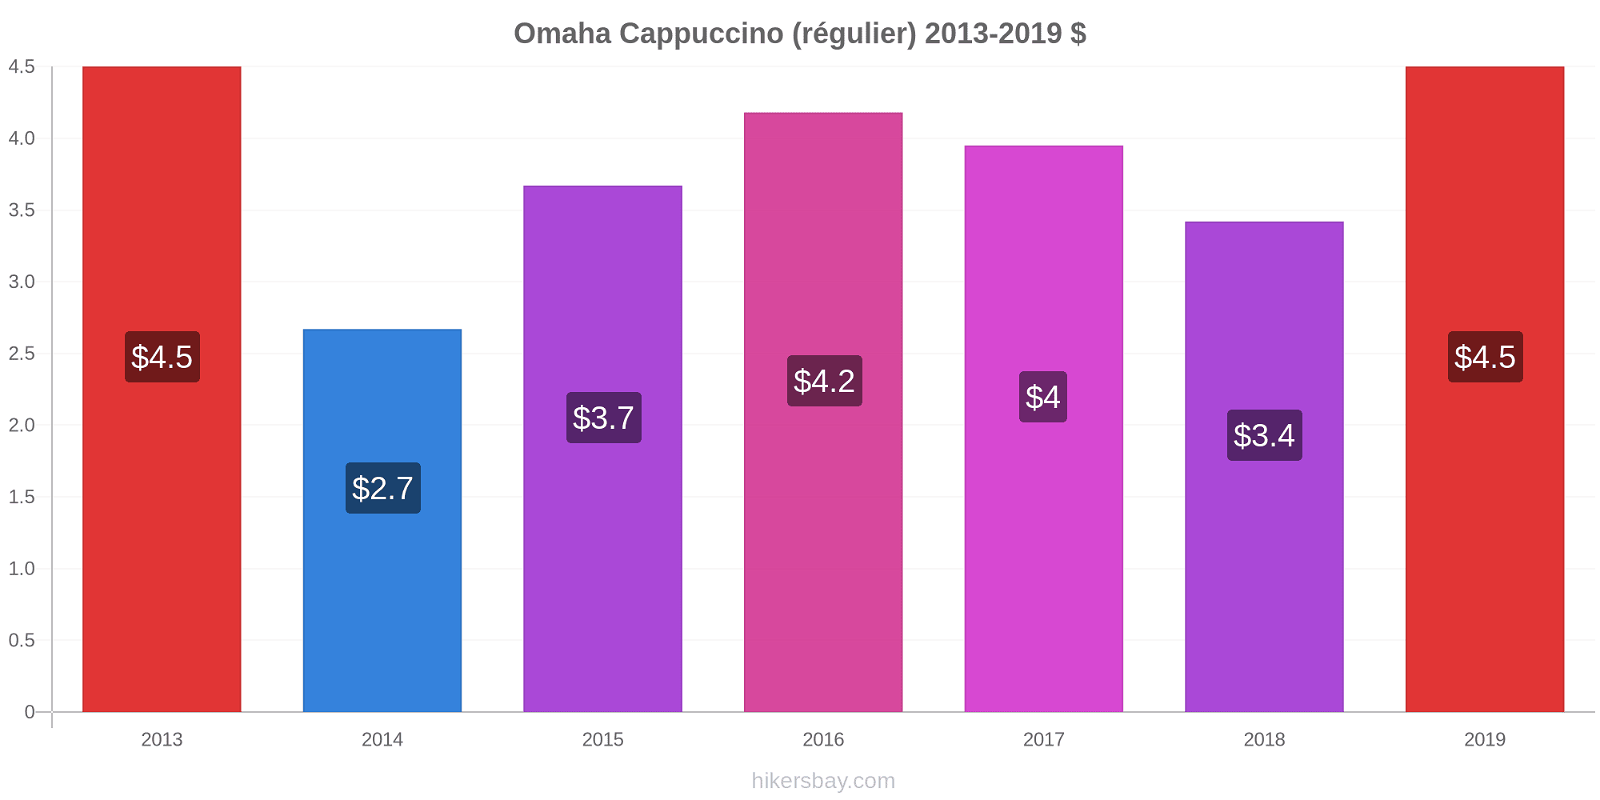 Omaha changements de prix Cappuccino (régulier) hikersbay.com